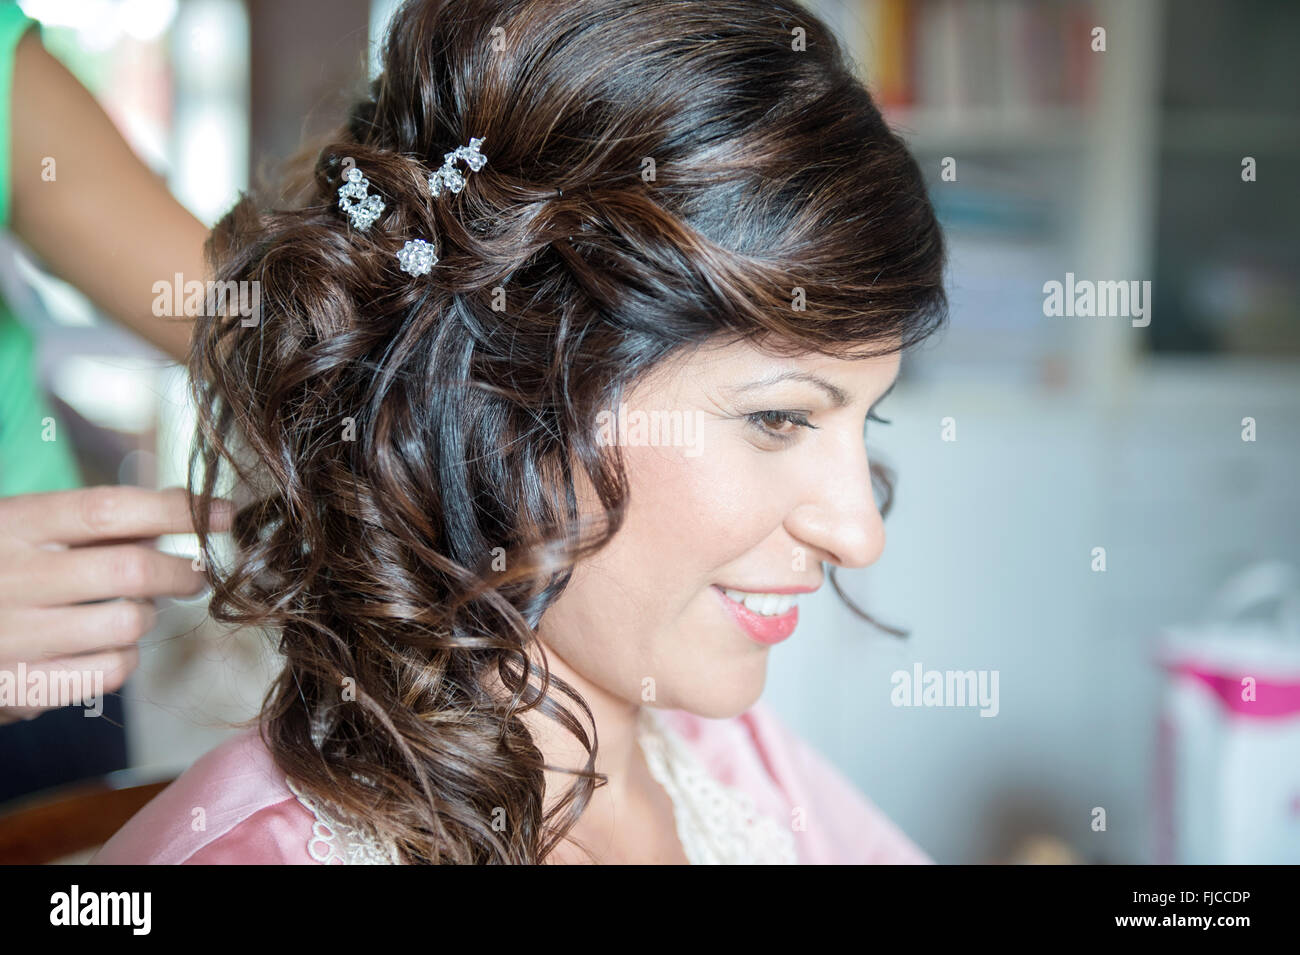 Frisur für Mädchen mit Haar-clips Stockfoto